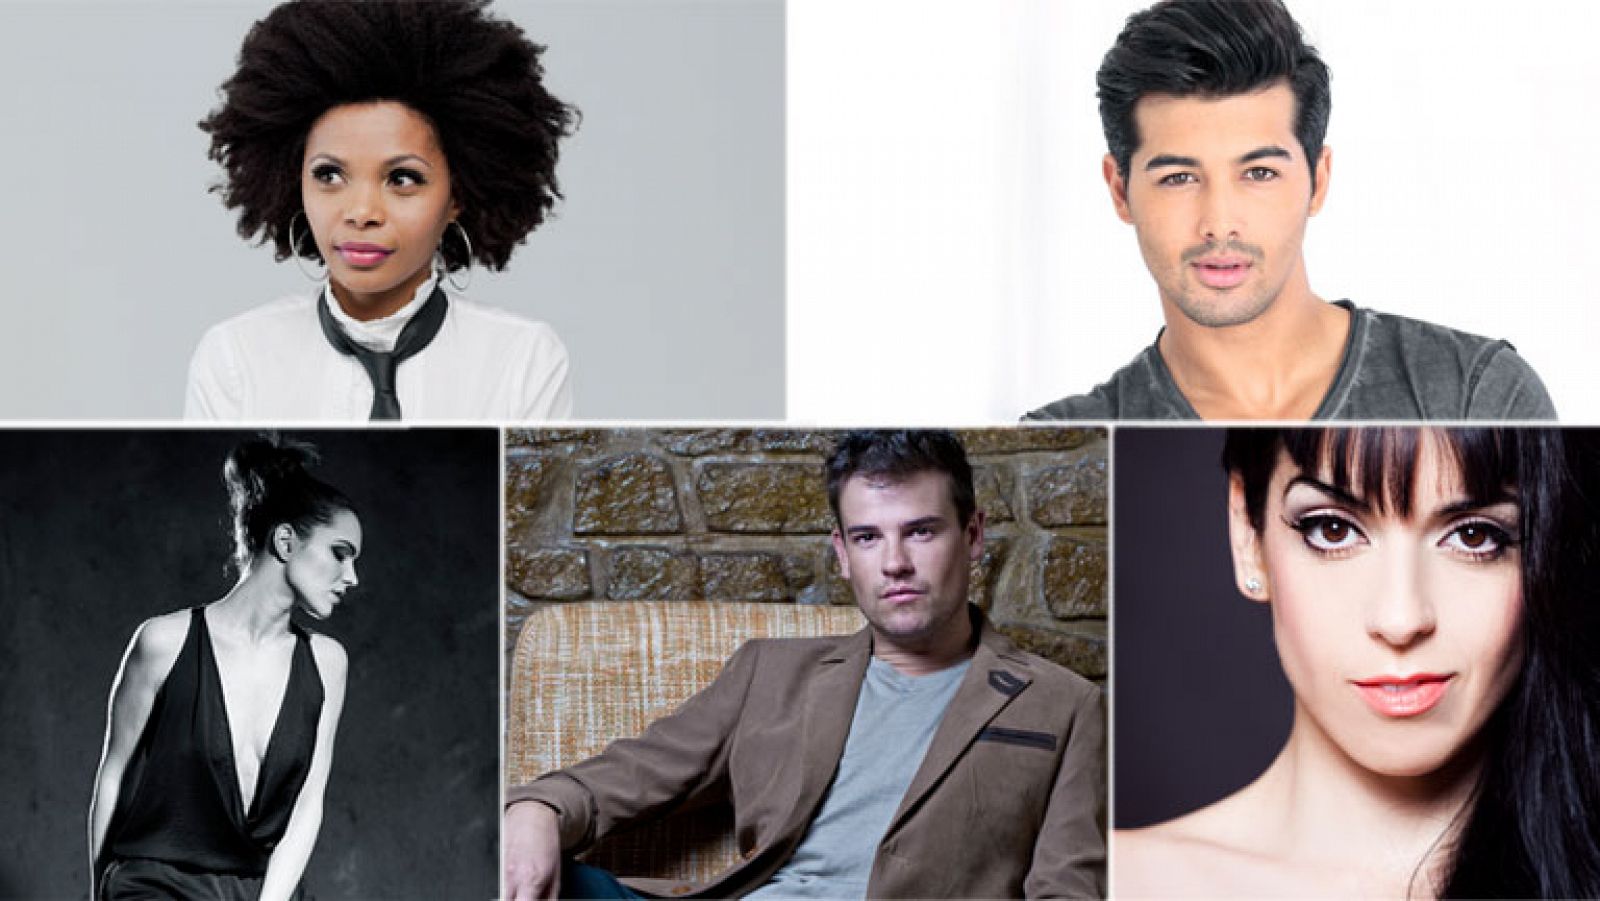  Eurovisión 2014 - Escucha las cinco canciones de los aspirantes para Eurovisión 2014